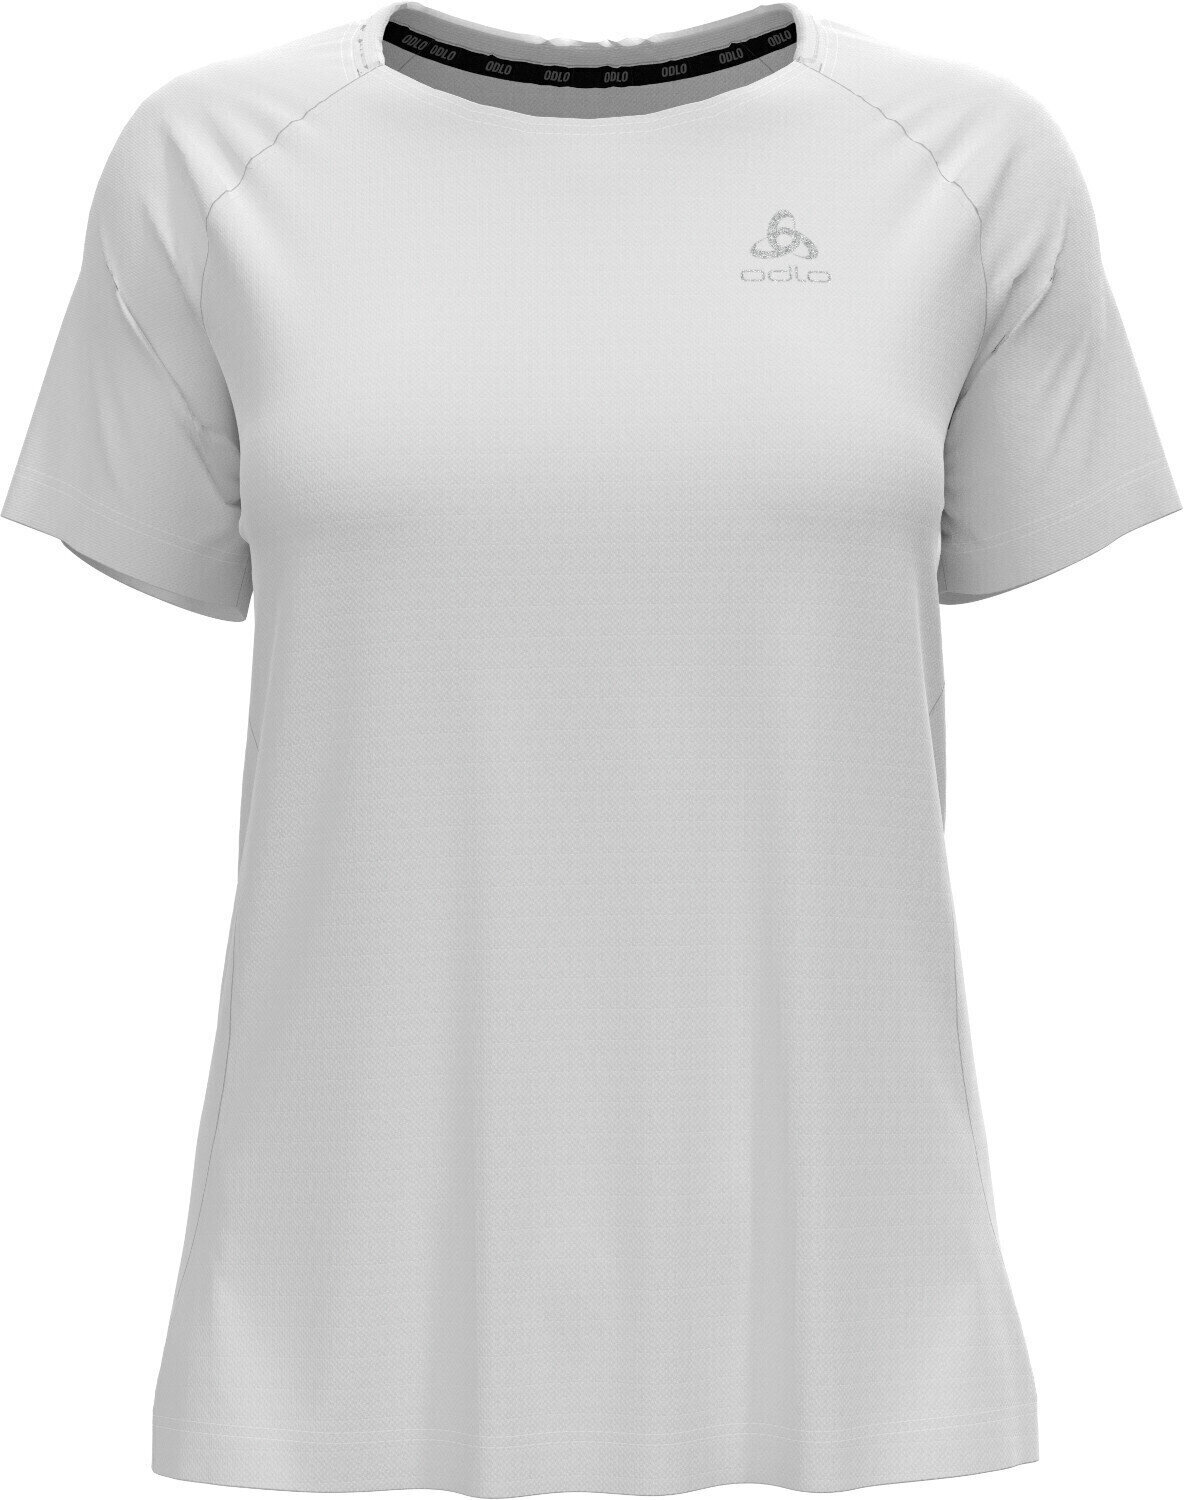 Chemise de course à manches courtes
 Odlo Essential T-Shirt White S Chemise de course à manches courtes